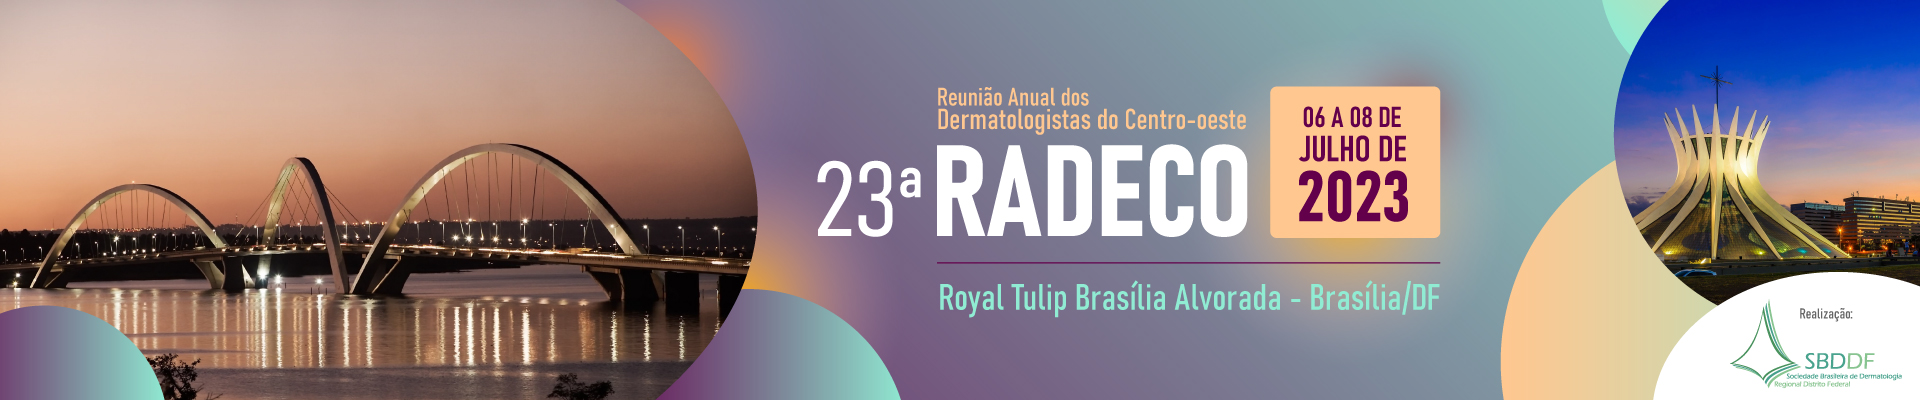 RADECO – Reunião Anual dos Dermatologistas da Região Centro-Oeste